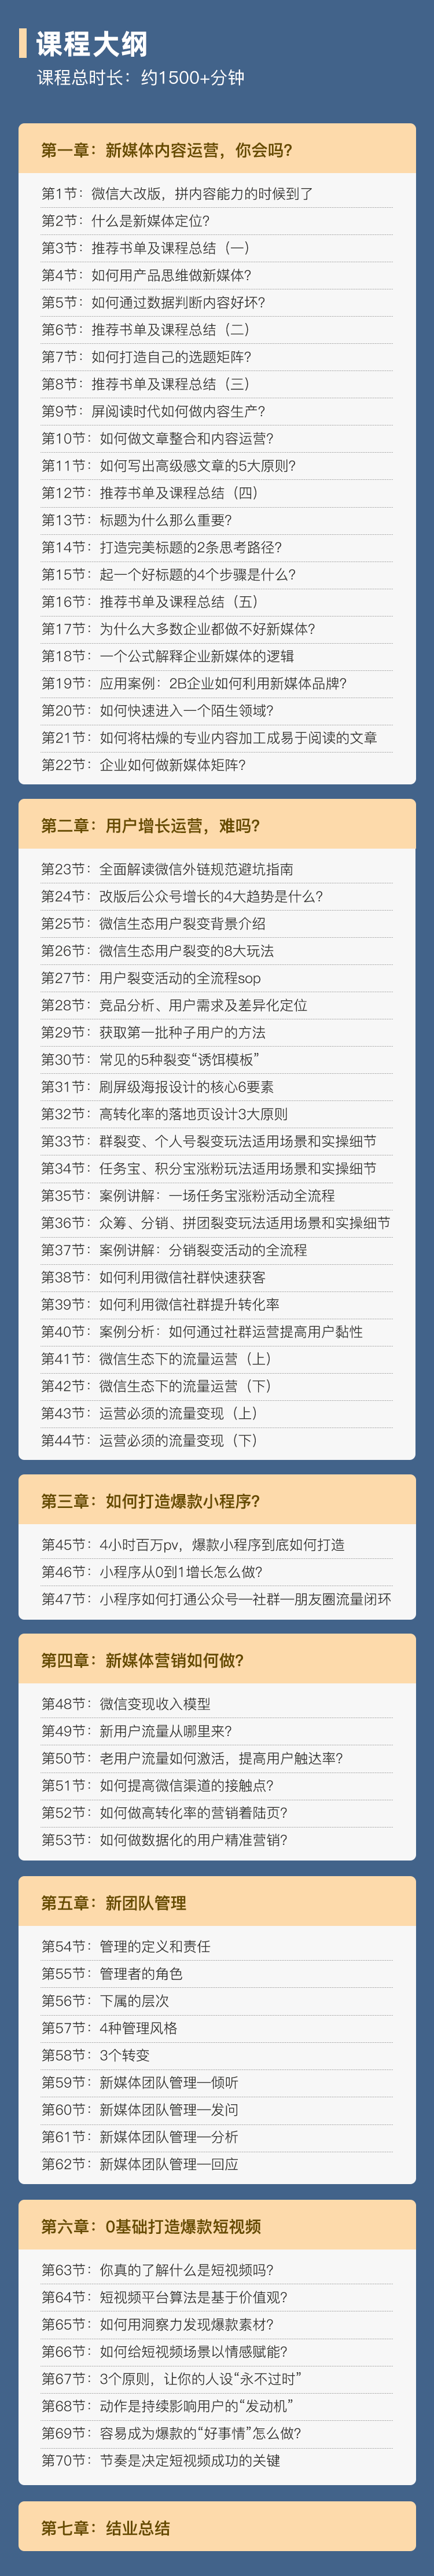 http://mtedu-img.oss-cn-beijing-internal.aliyuncs.com/ueditor/20220712174324_143854.png